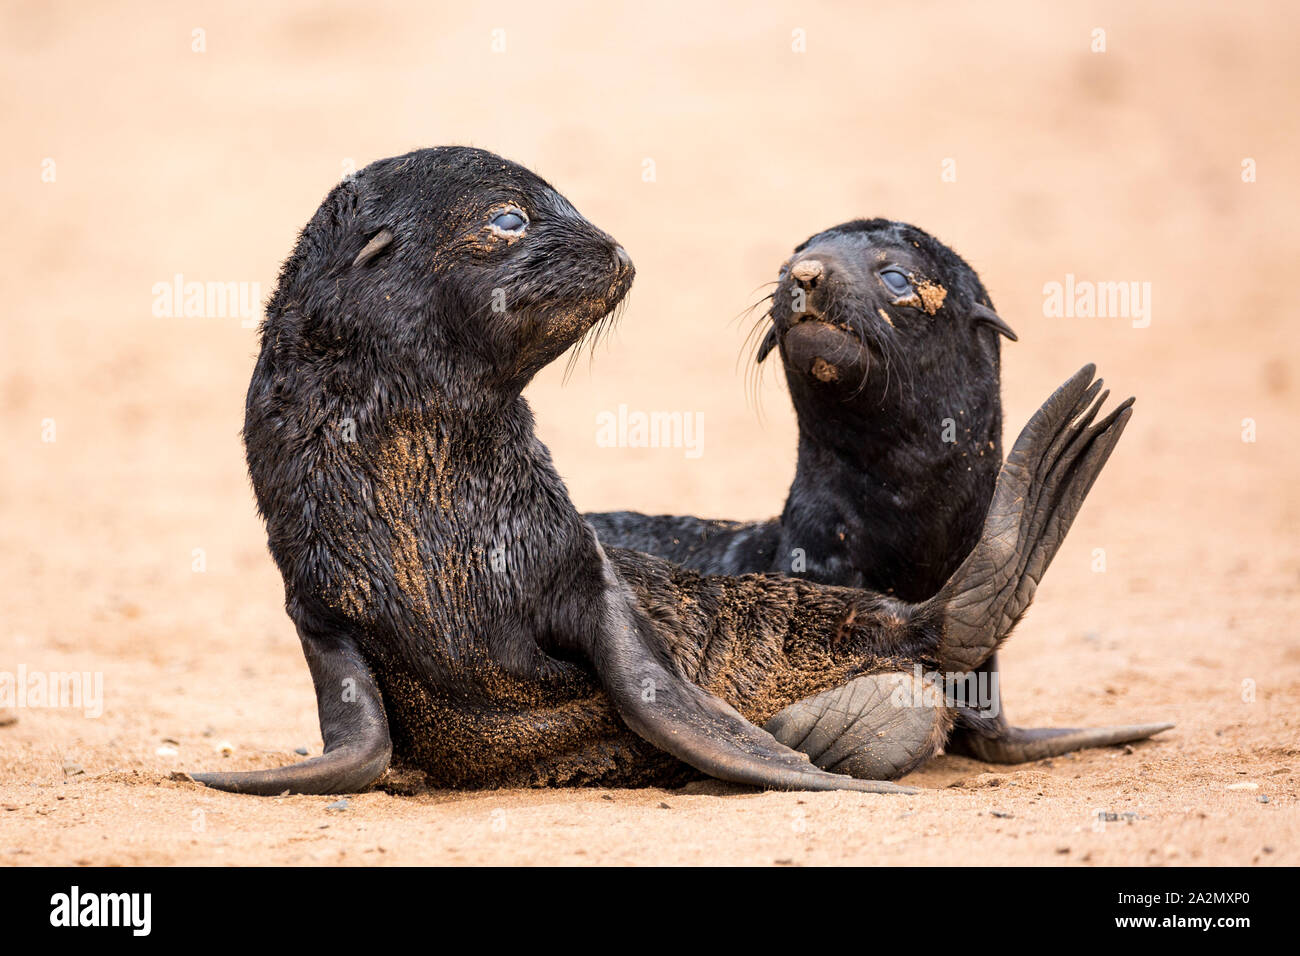 Les bébés phoques à fourrure d'Afrique du sud à Cape Cross Seal Reserve, Namibie, Afrique Banque D'Images